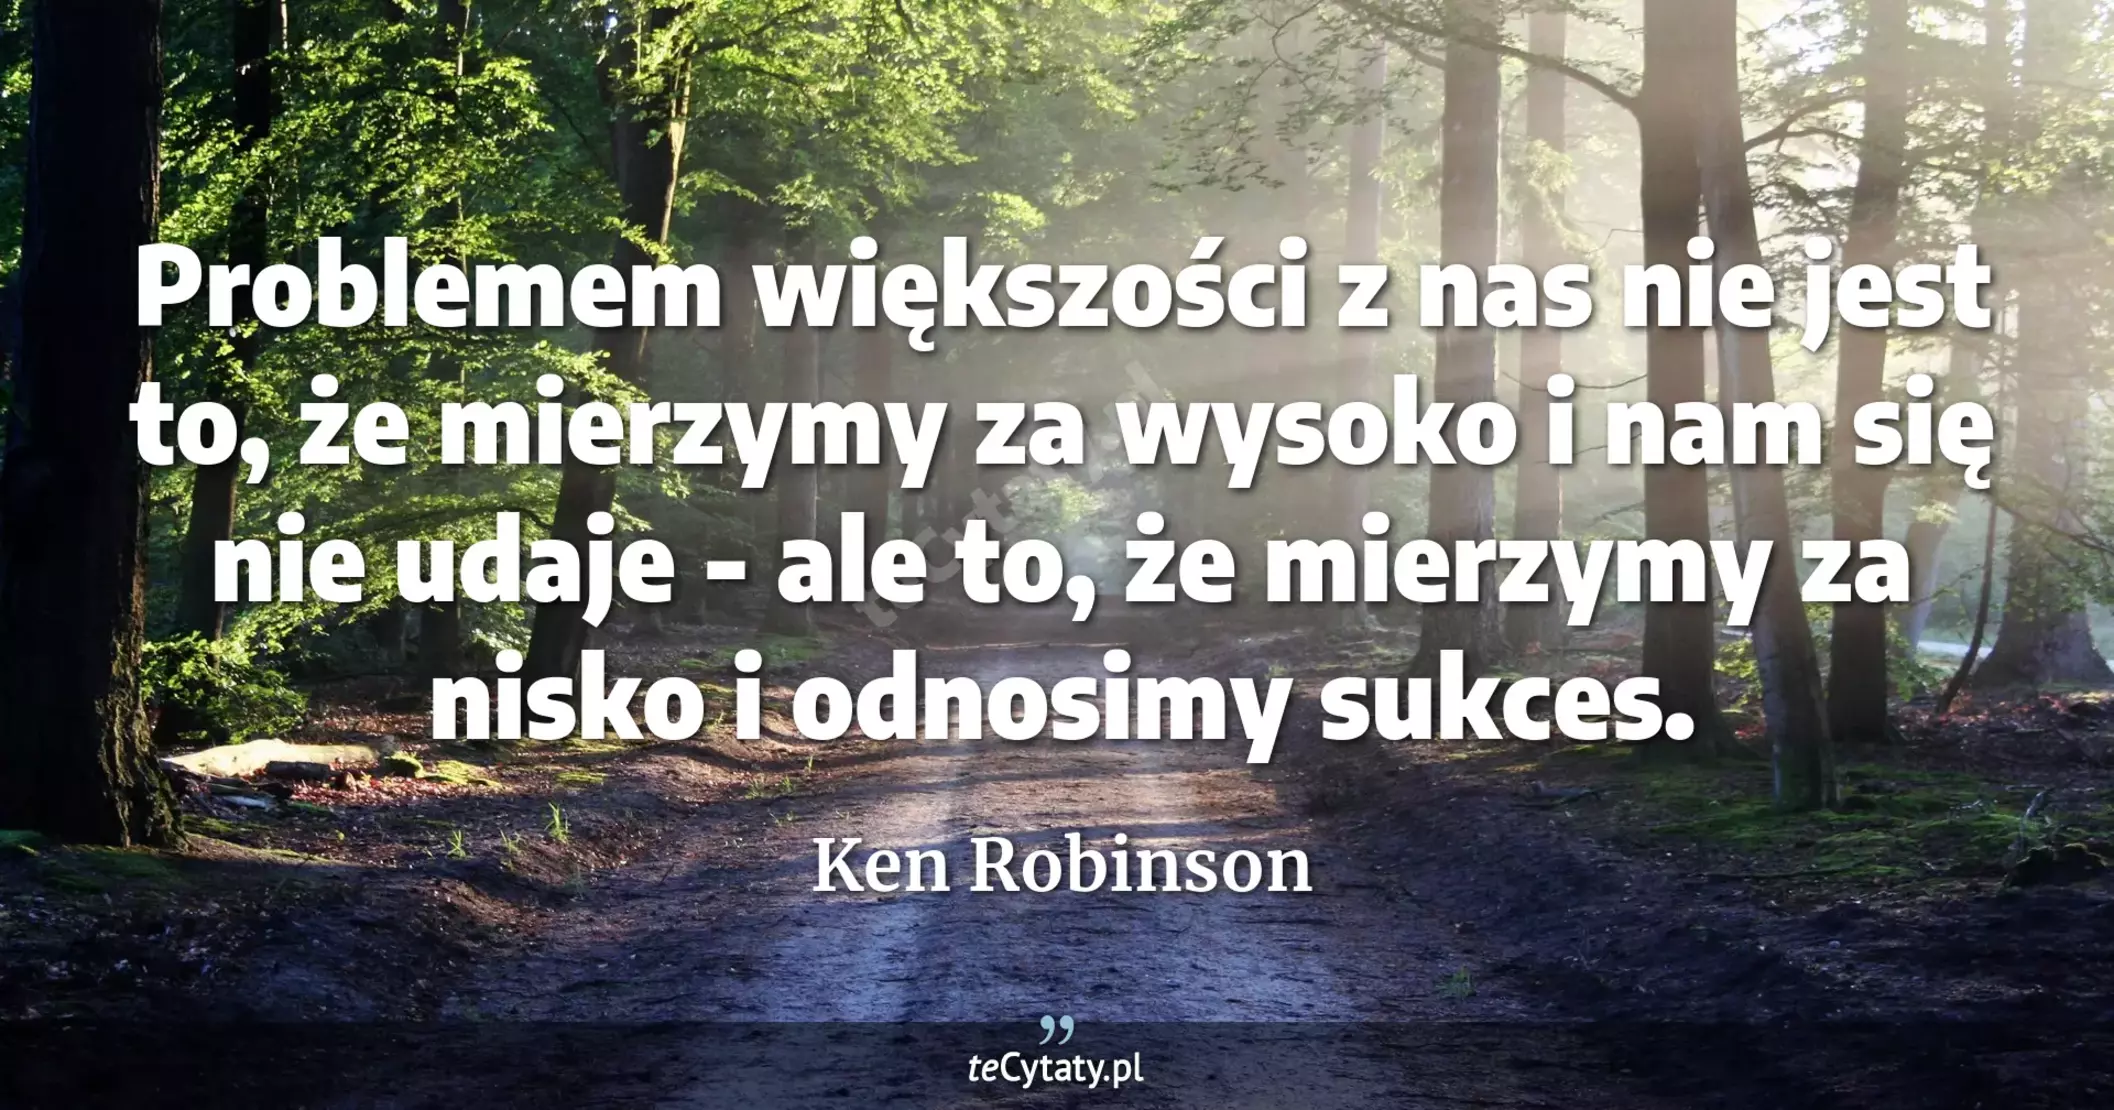 Problemem większości z nas nie jest to, że mierzymy za wysoko i nam się nie udaje - ale to, że mierzymy za nisko i odnosimy sukces. - Ken Robinson